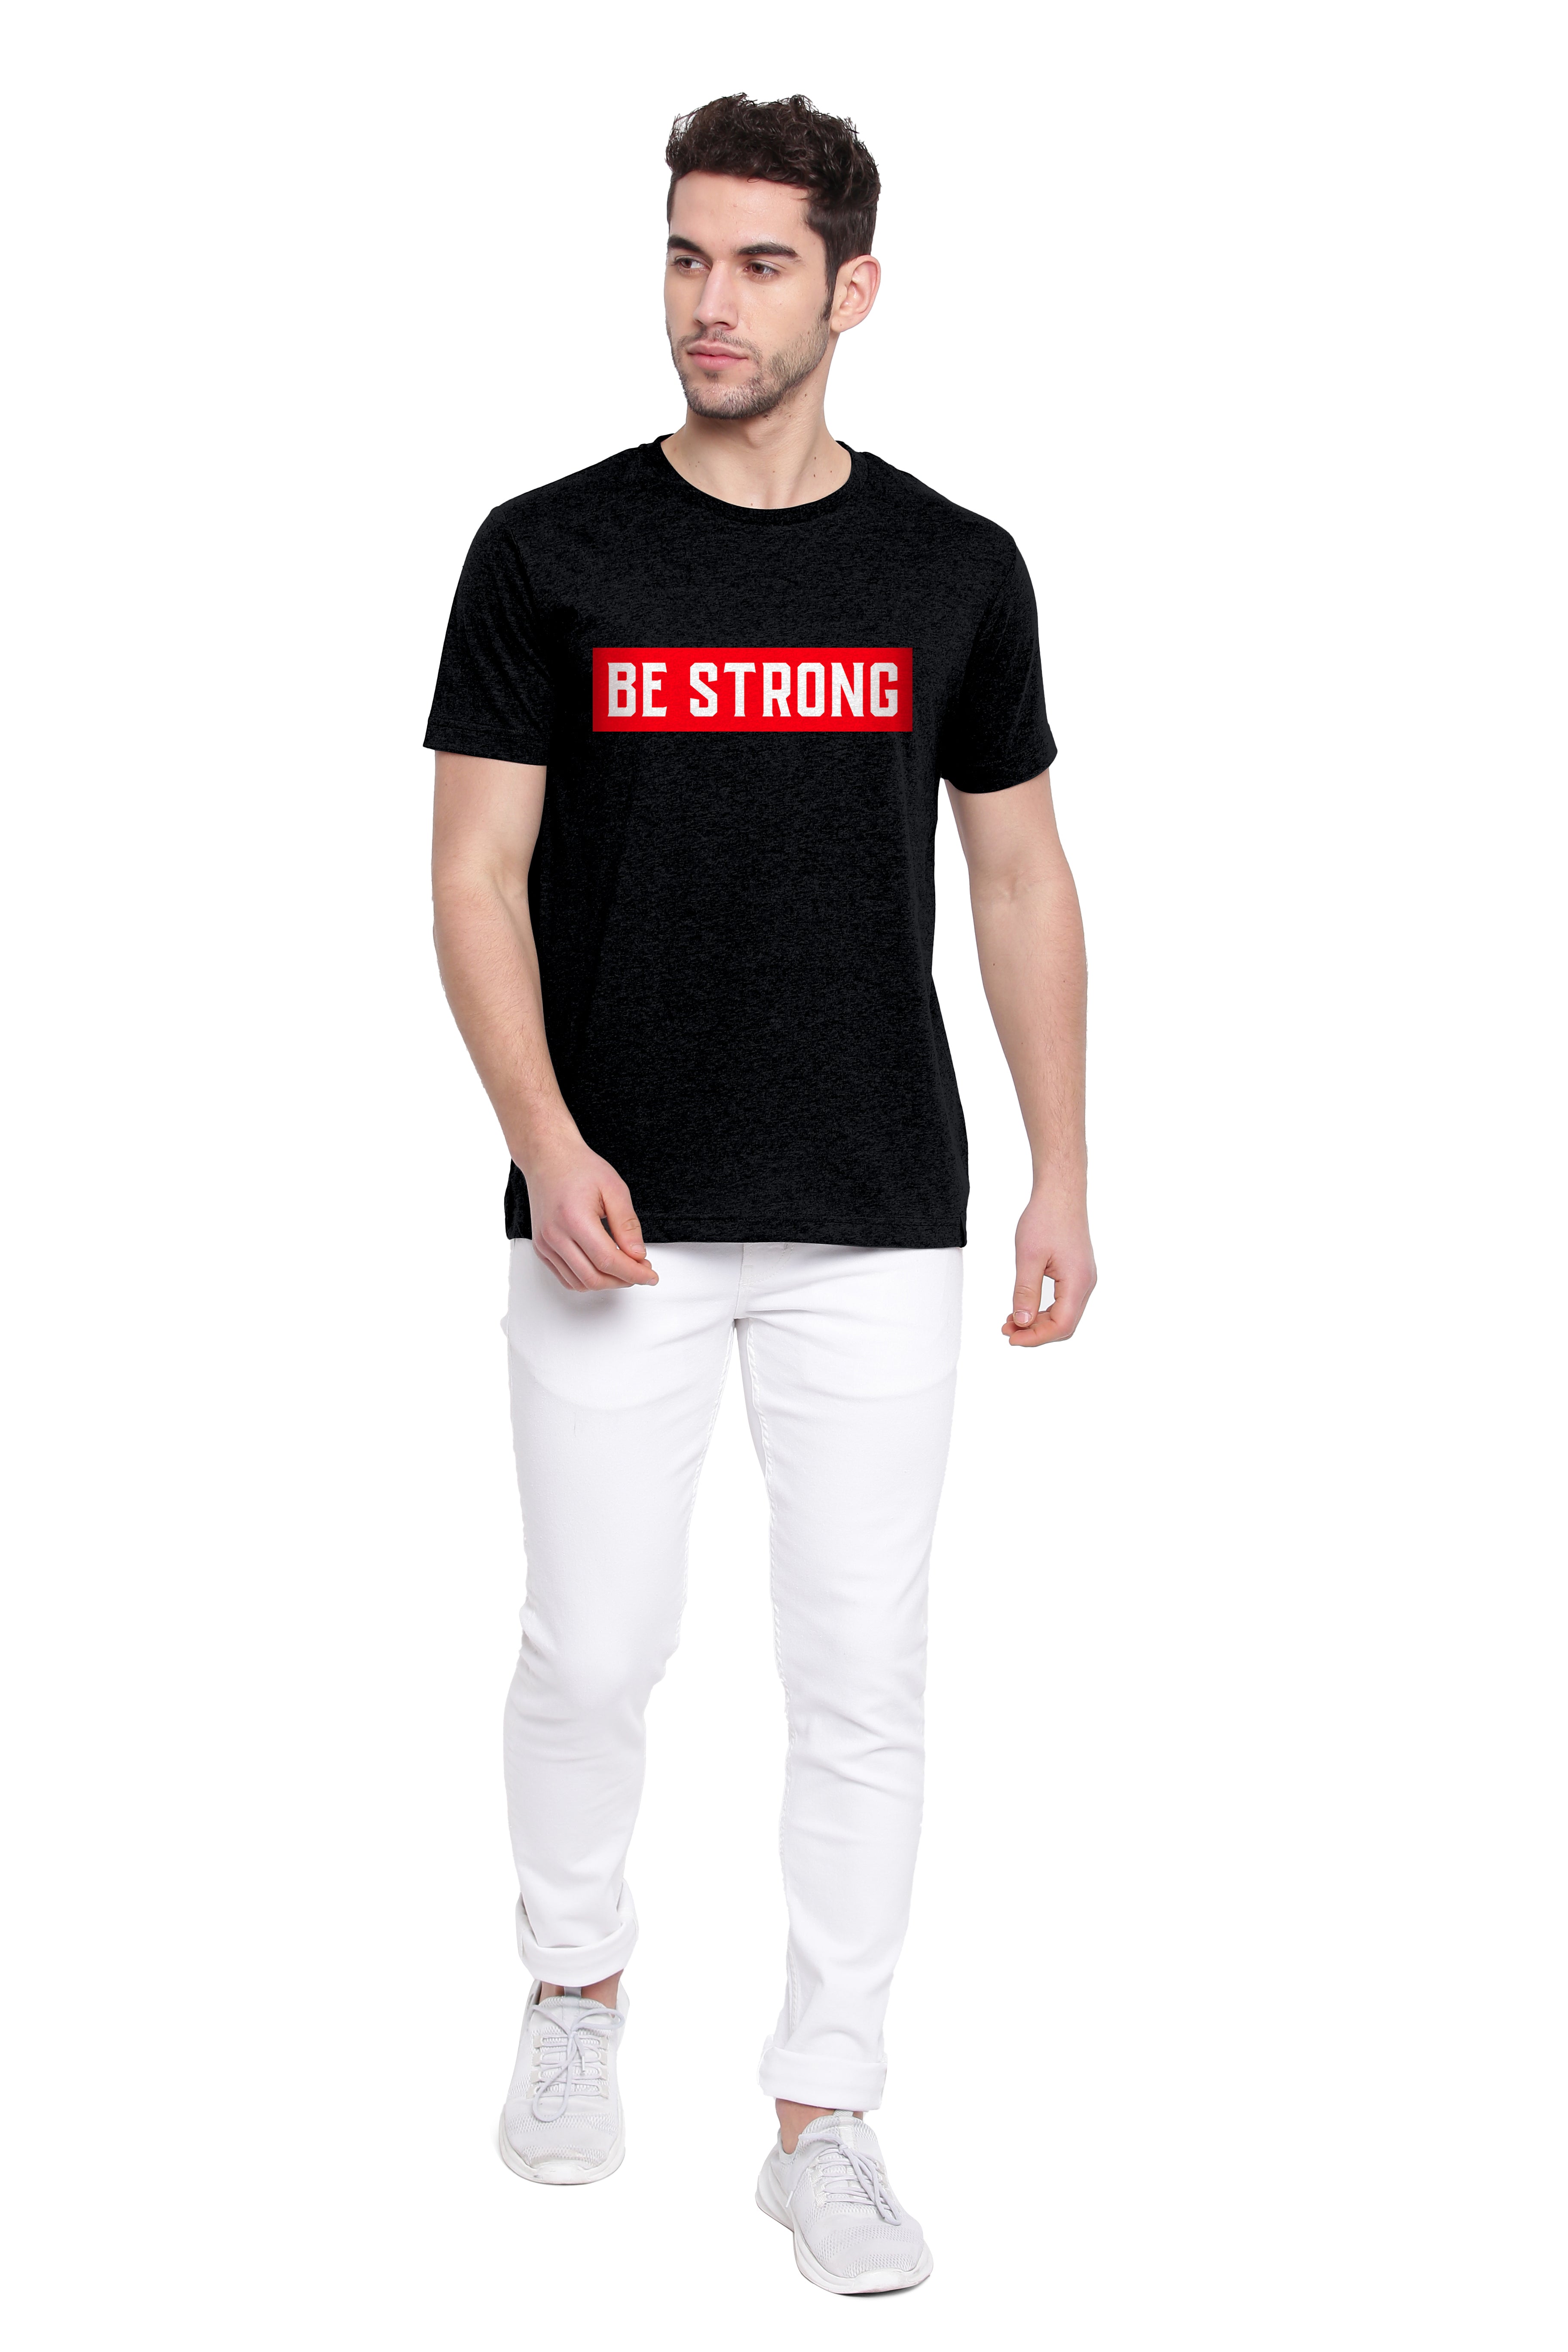 Poomer Printed T-Shirt - Be Strong